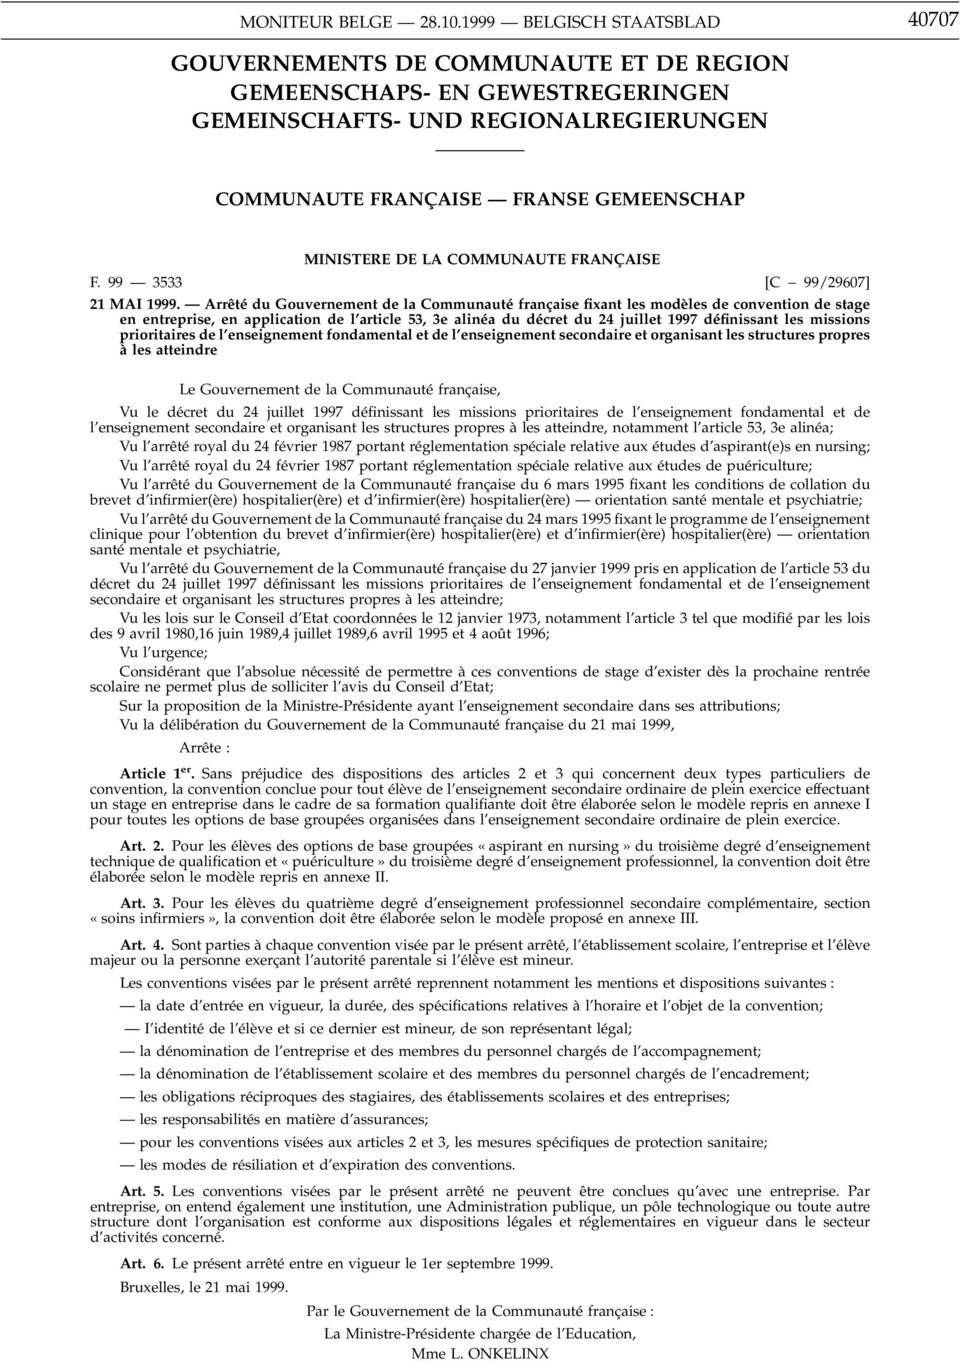 Arrêté du Gouvernement de la Communauté française fixant les modèles de convention de stage en entreprise, en application de l article 53, 3e alinéa du décret du 24 juillet 1997 définissant les